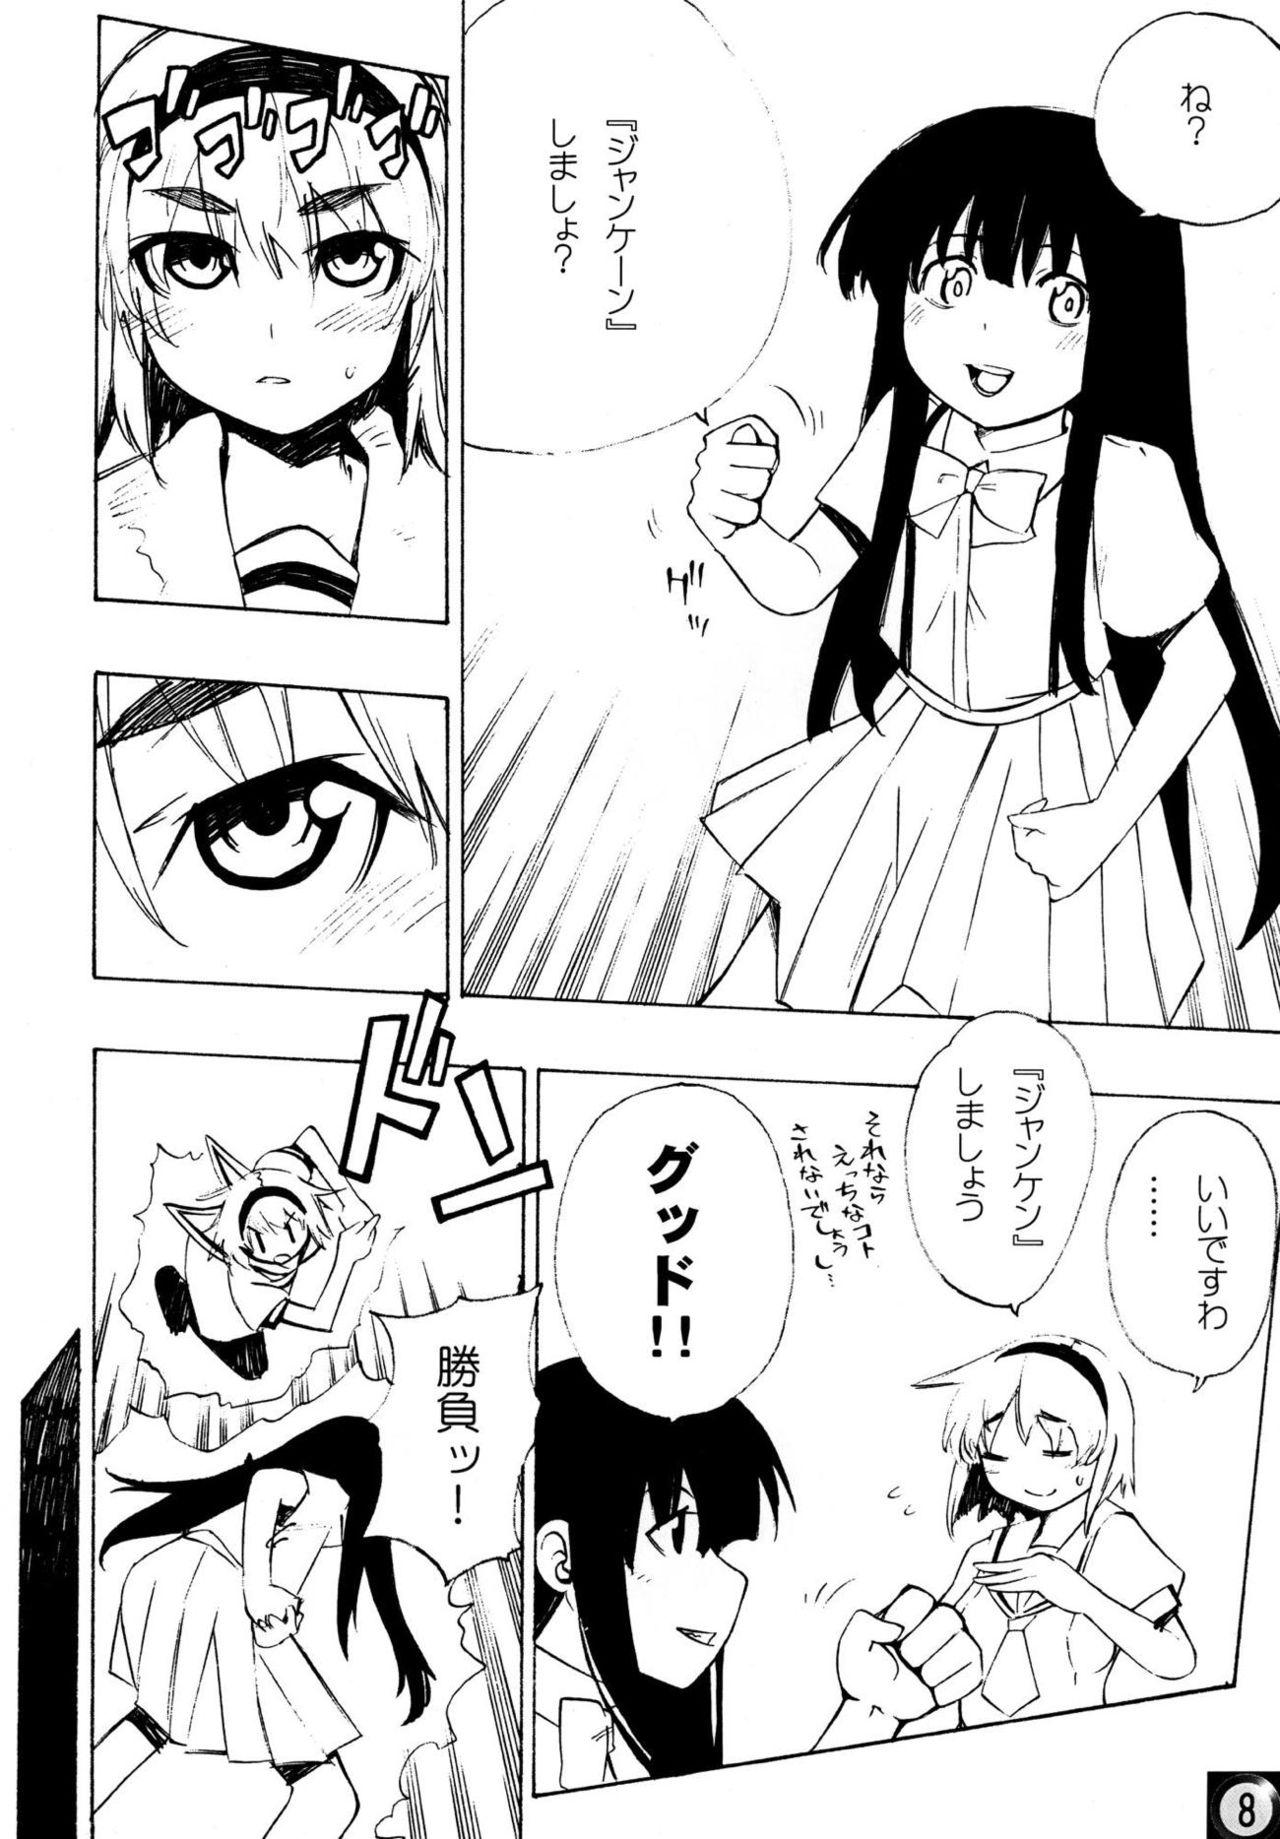 Public Ecchi ja Nai to Ikenai to Omoimasu!! - Higurashi no naku koro ni Uncut - Page 7